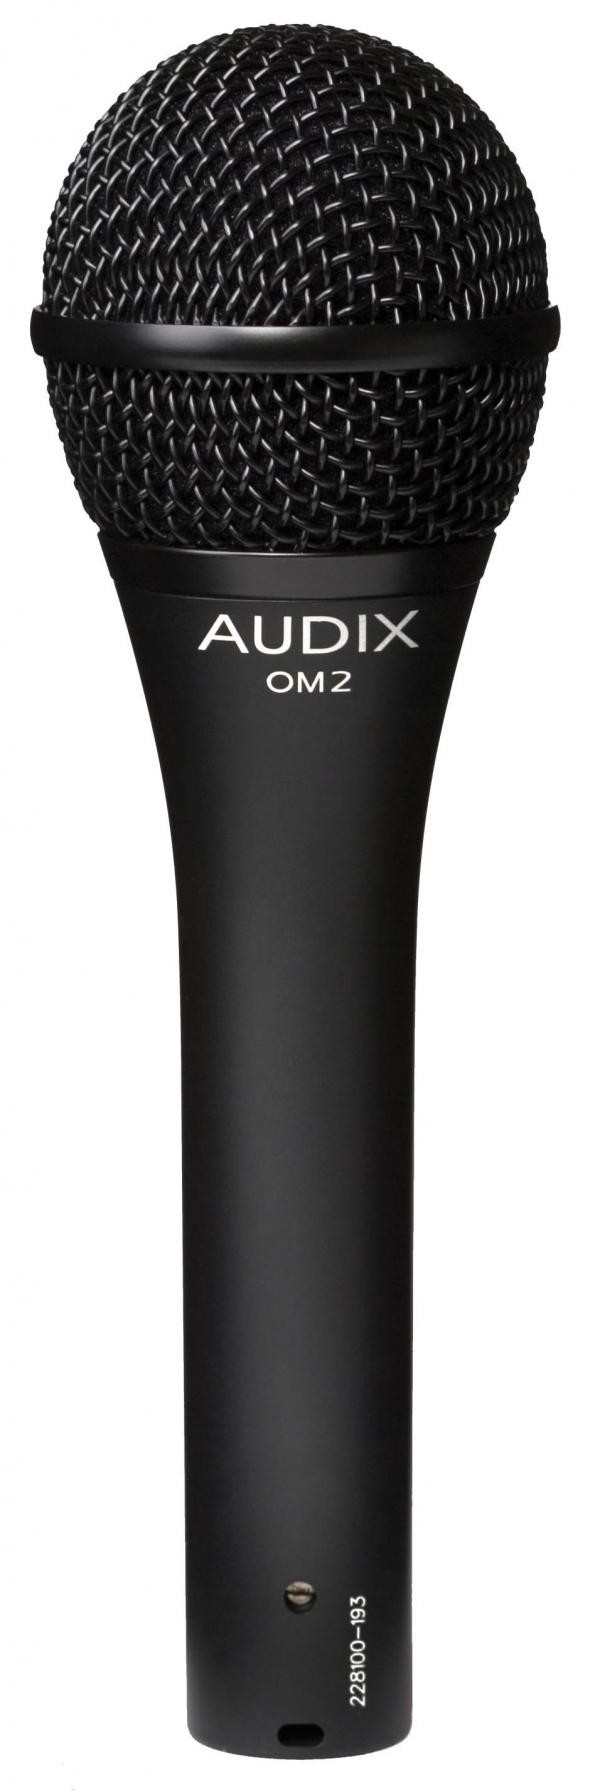 Audix OM2 - mikrofon wokalny dynamiczny